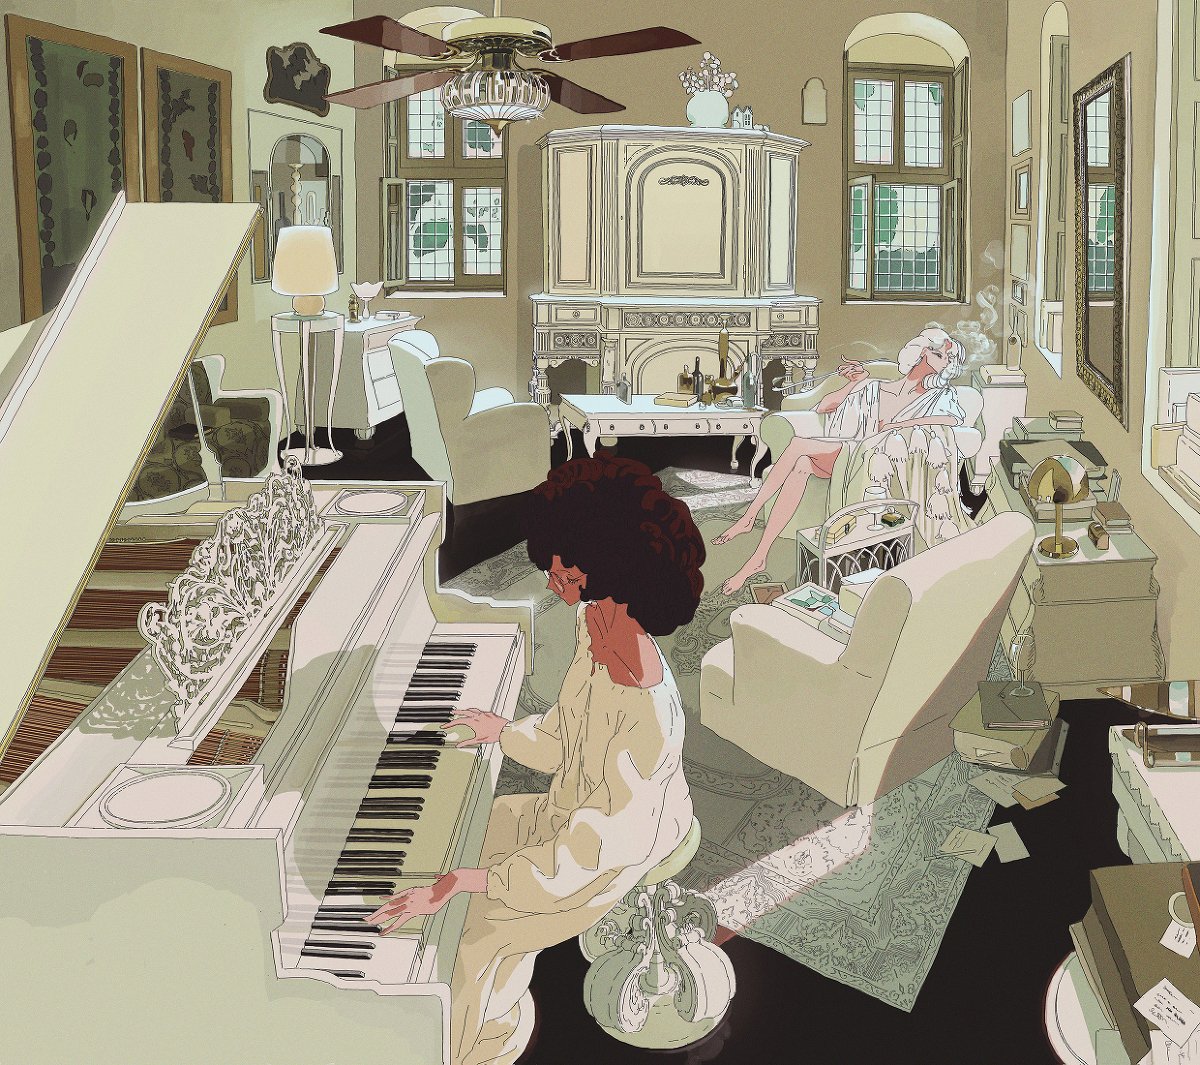 Ondine #anime #digitalart #future #illustration #indonesia #mutja #Vintage #piano pixiv.net/artworks/98950…